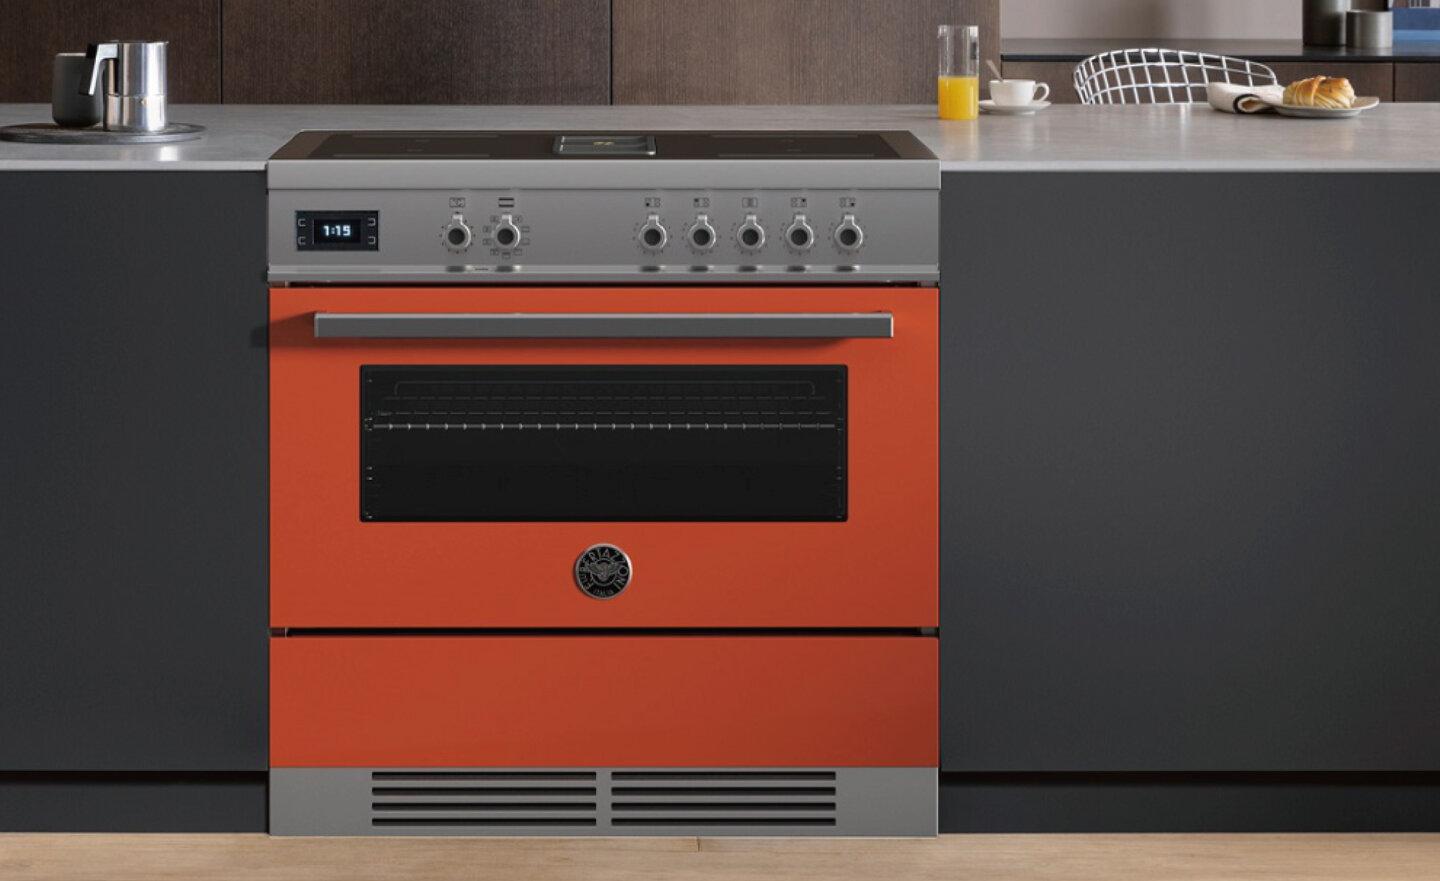 義大利 Air-Tec 爐連烤，整合感應爐、檯面式抽油煙機及烤箱三機合一